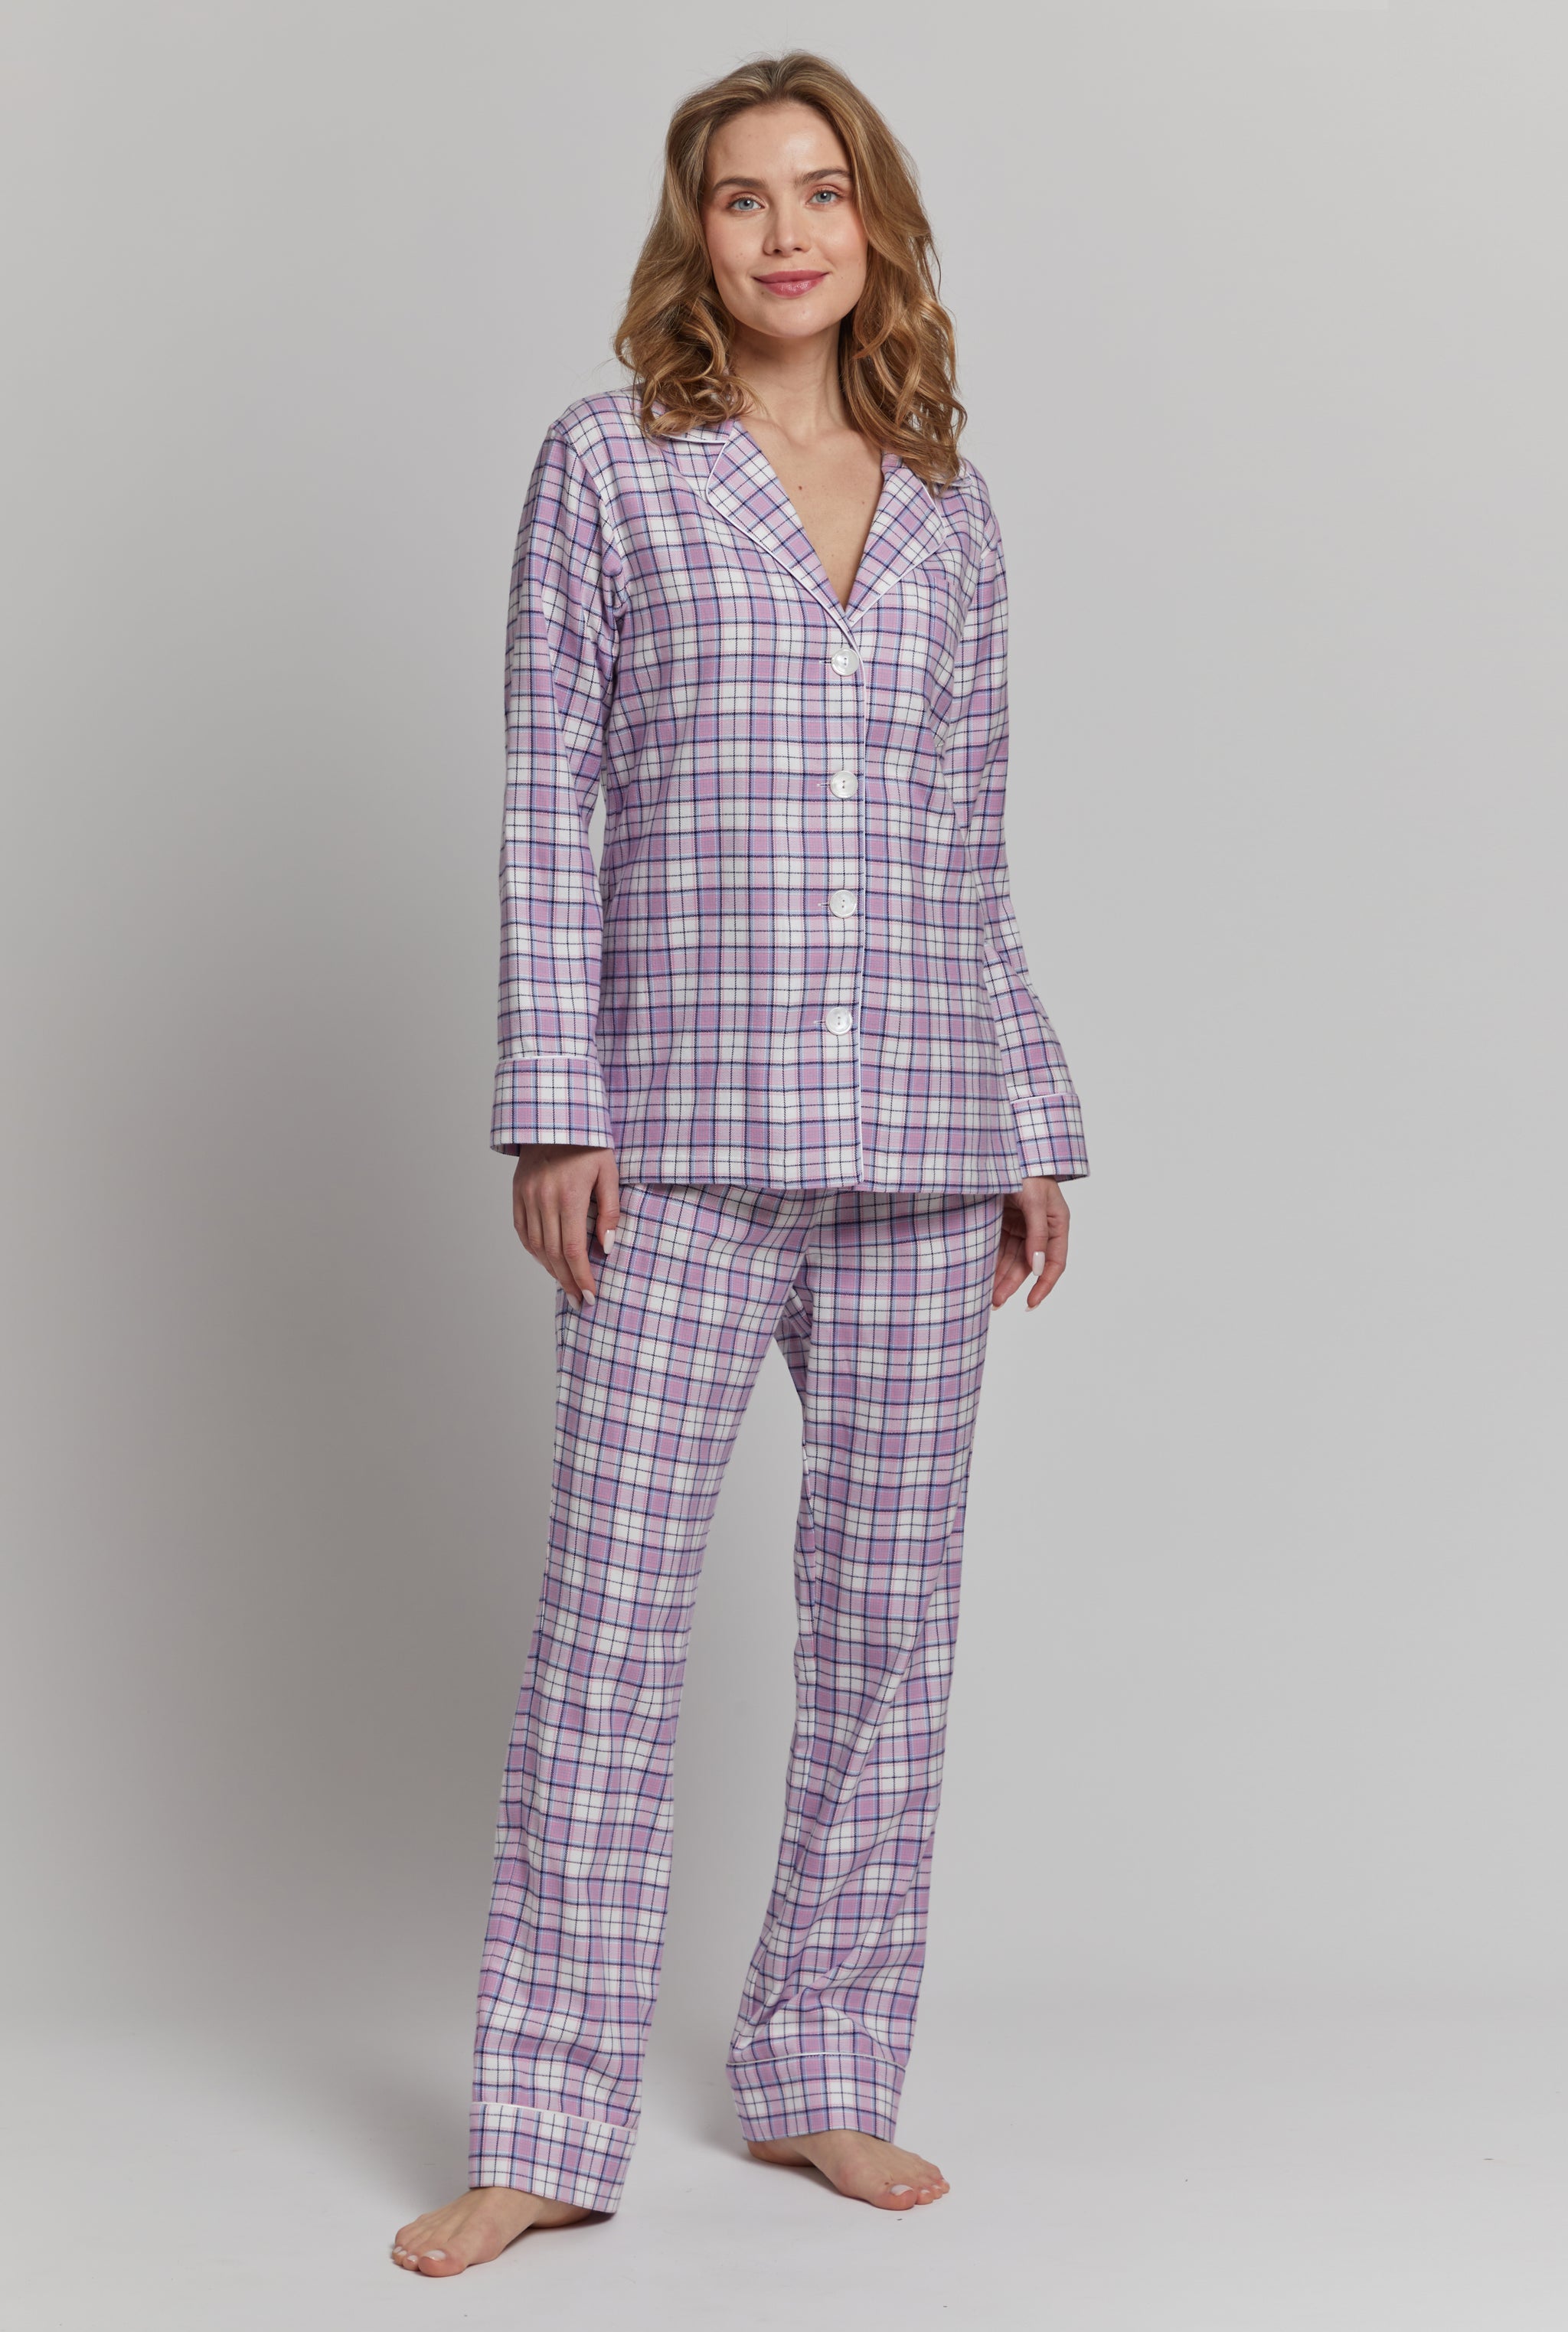 Buy Women's Pyjamas 100% Cotton Online